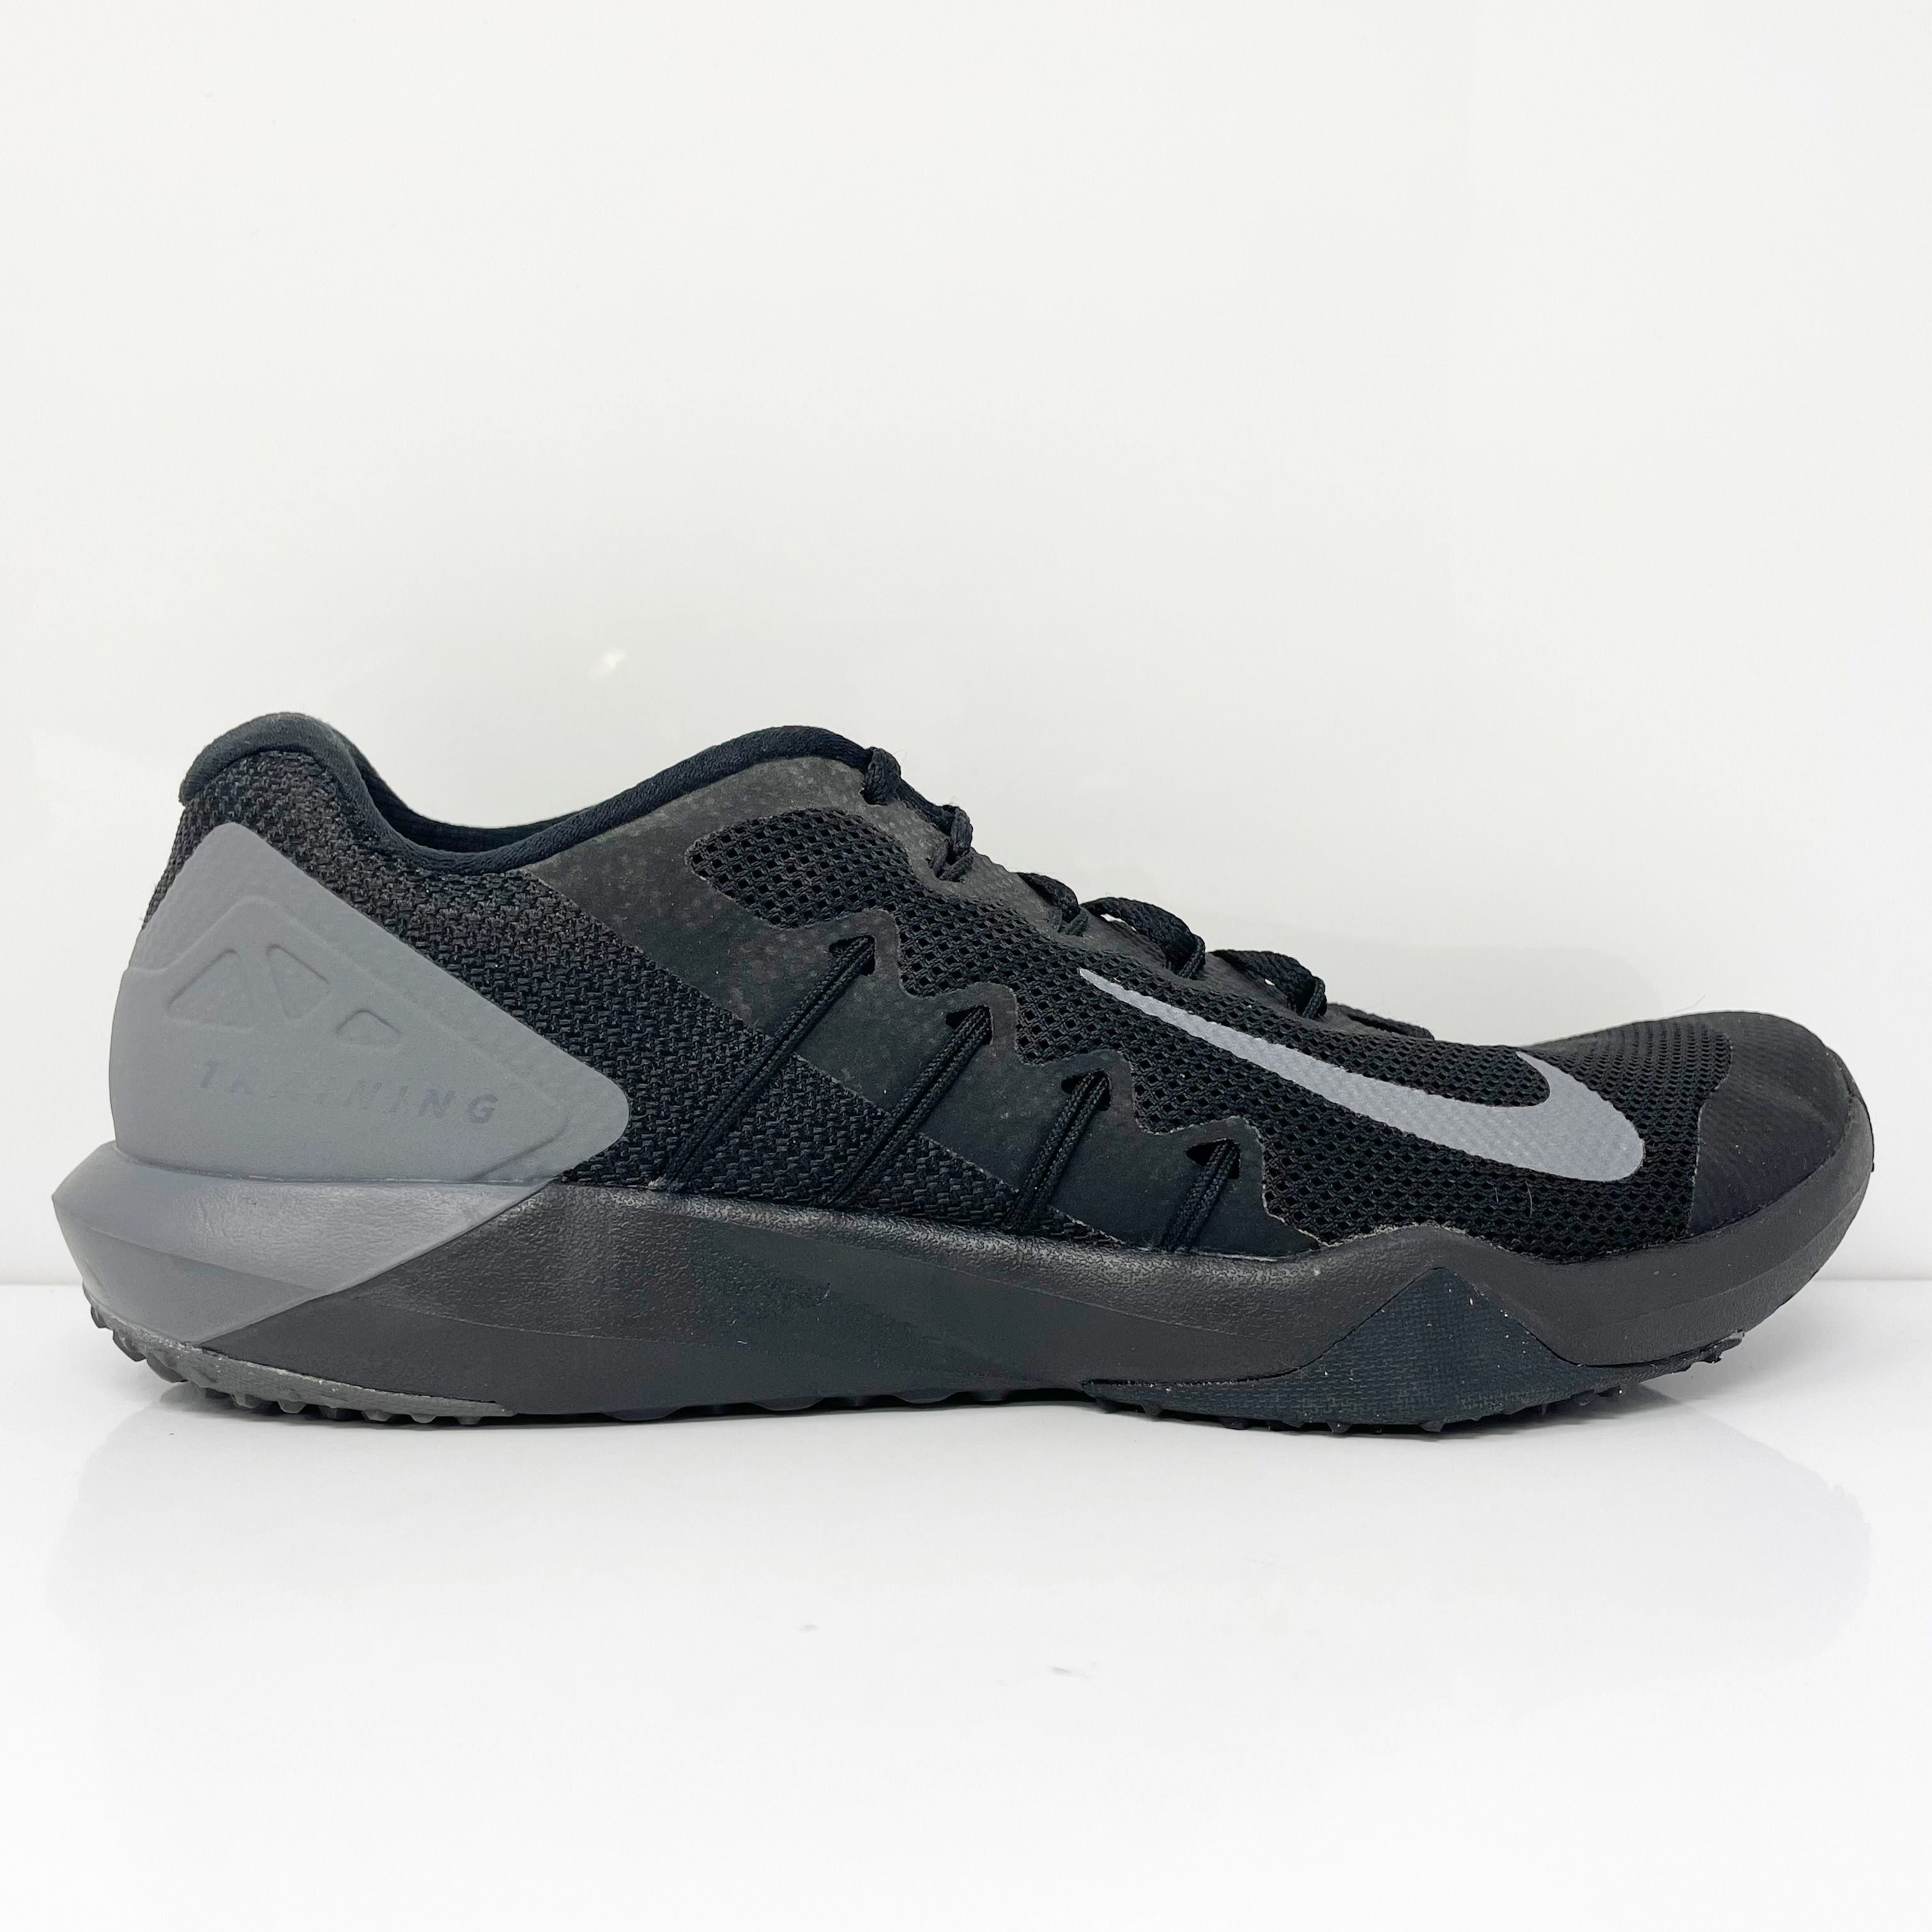 salida Trampolín educación Size 10 - Nike Retaliation Trainer 2 Black Grey for sale online | eBay